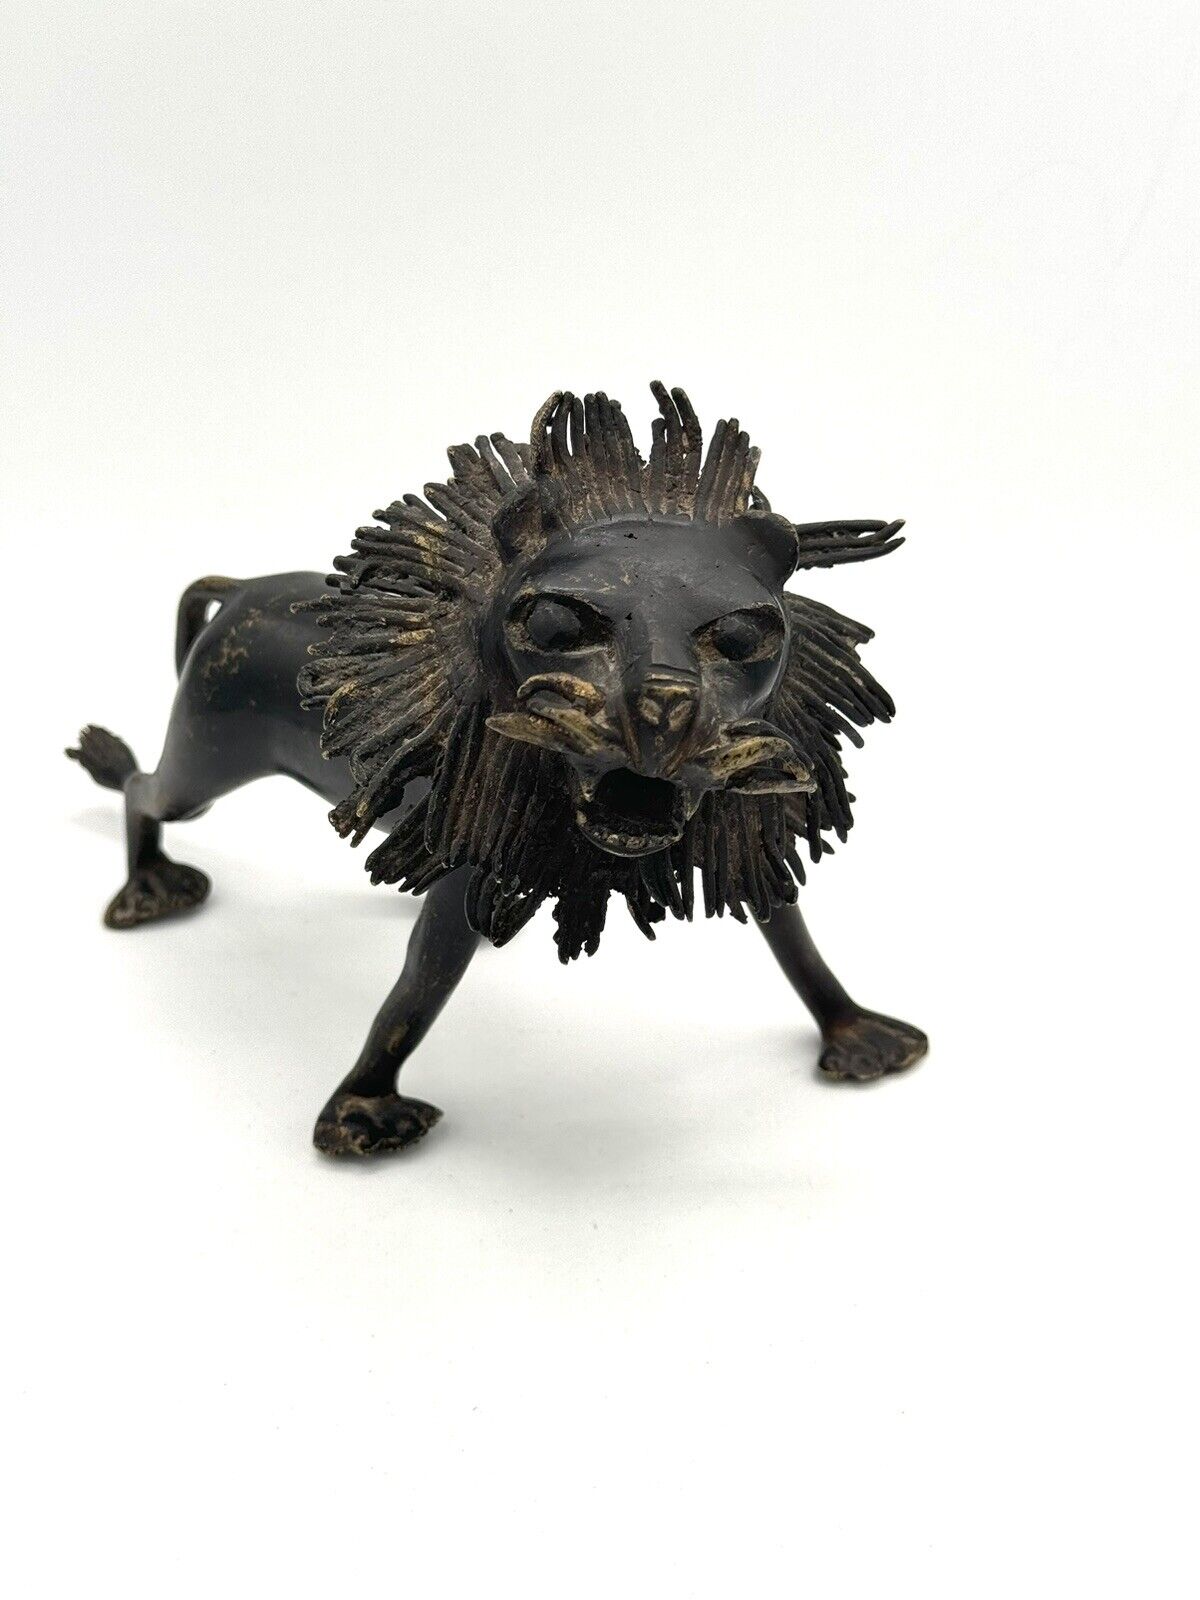 Vintage cast iron lion, 10”x6”, Heavy